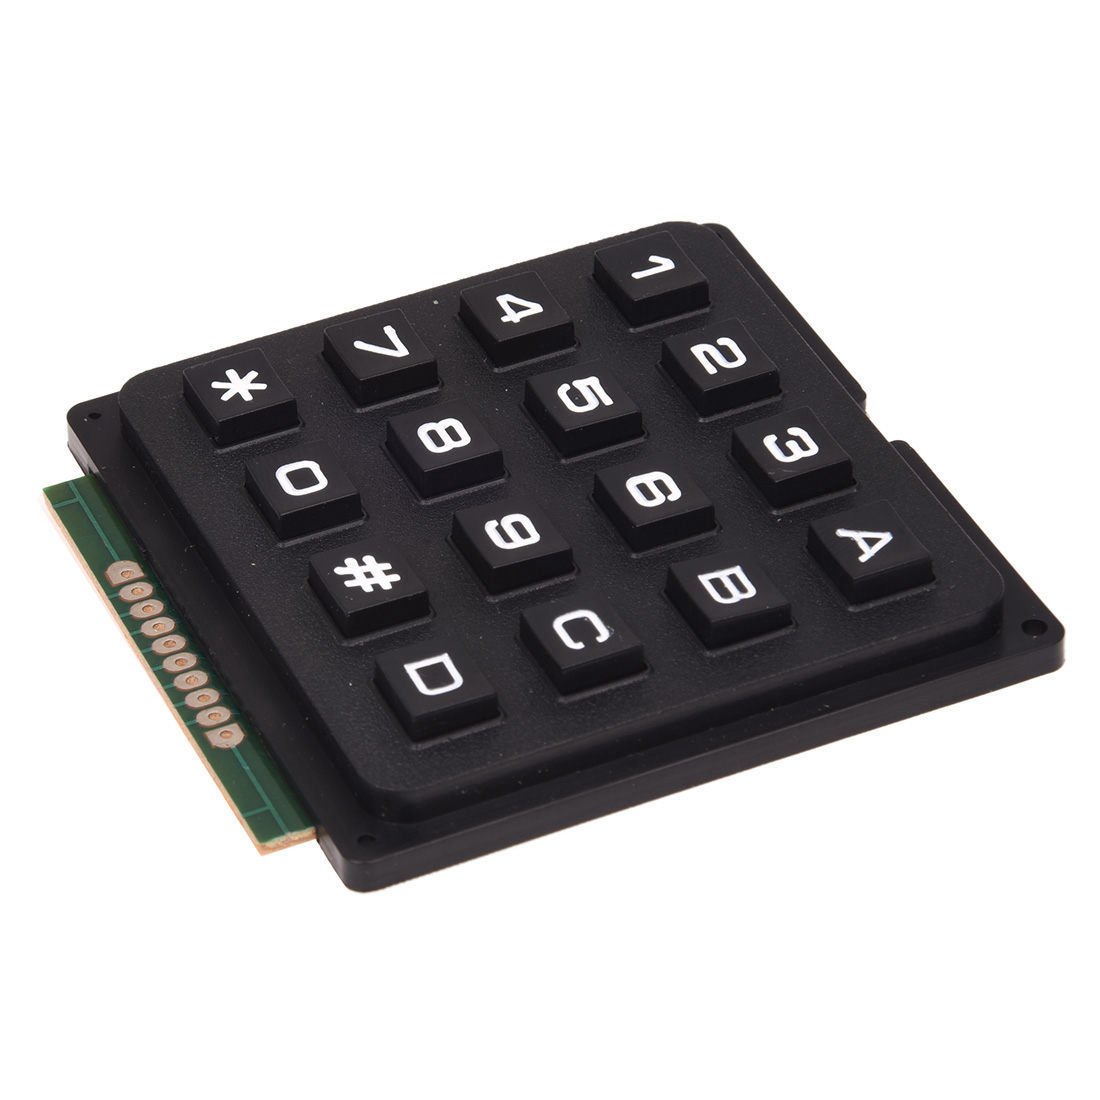 4x4 Matrix 16 Keyboard Keypad